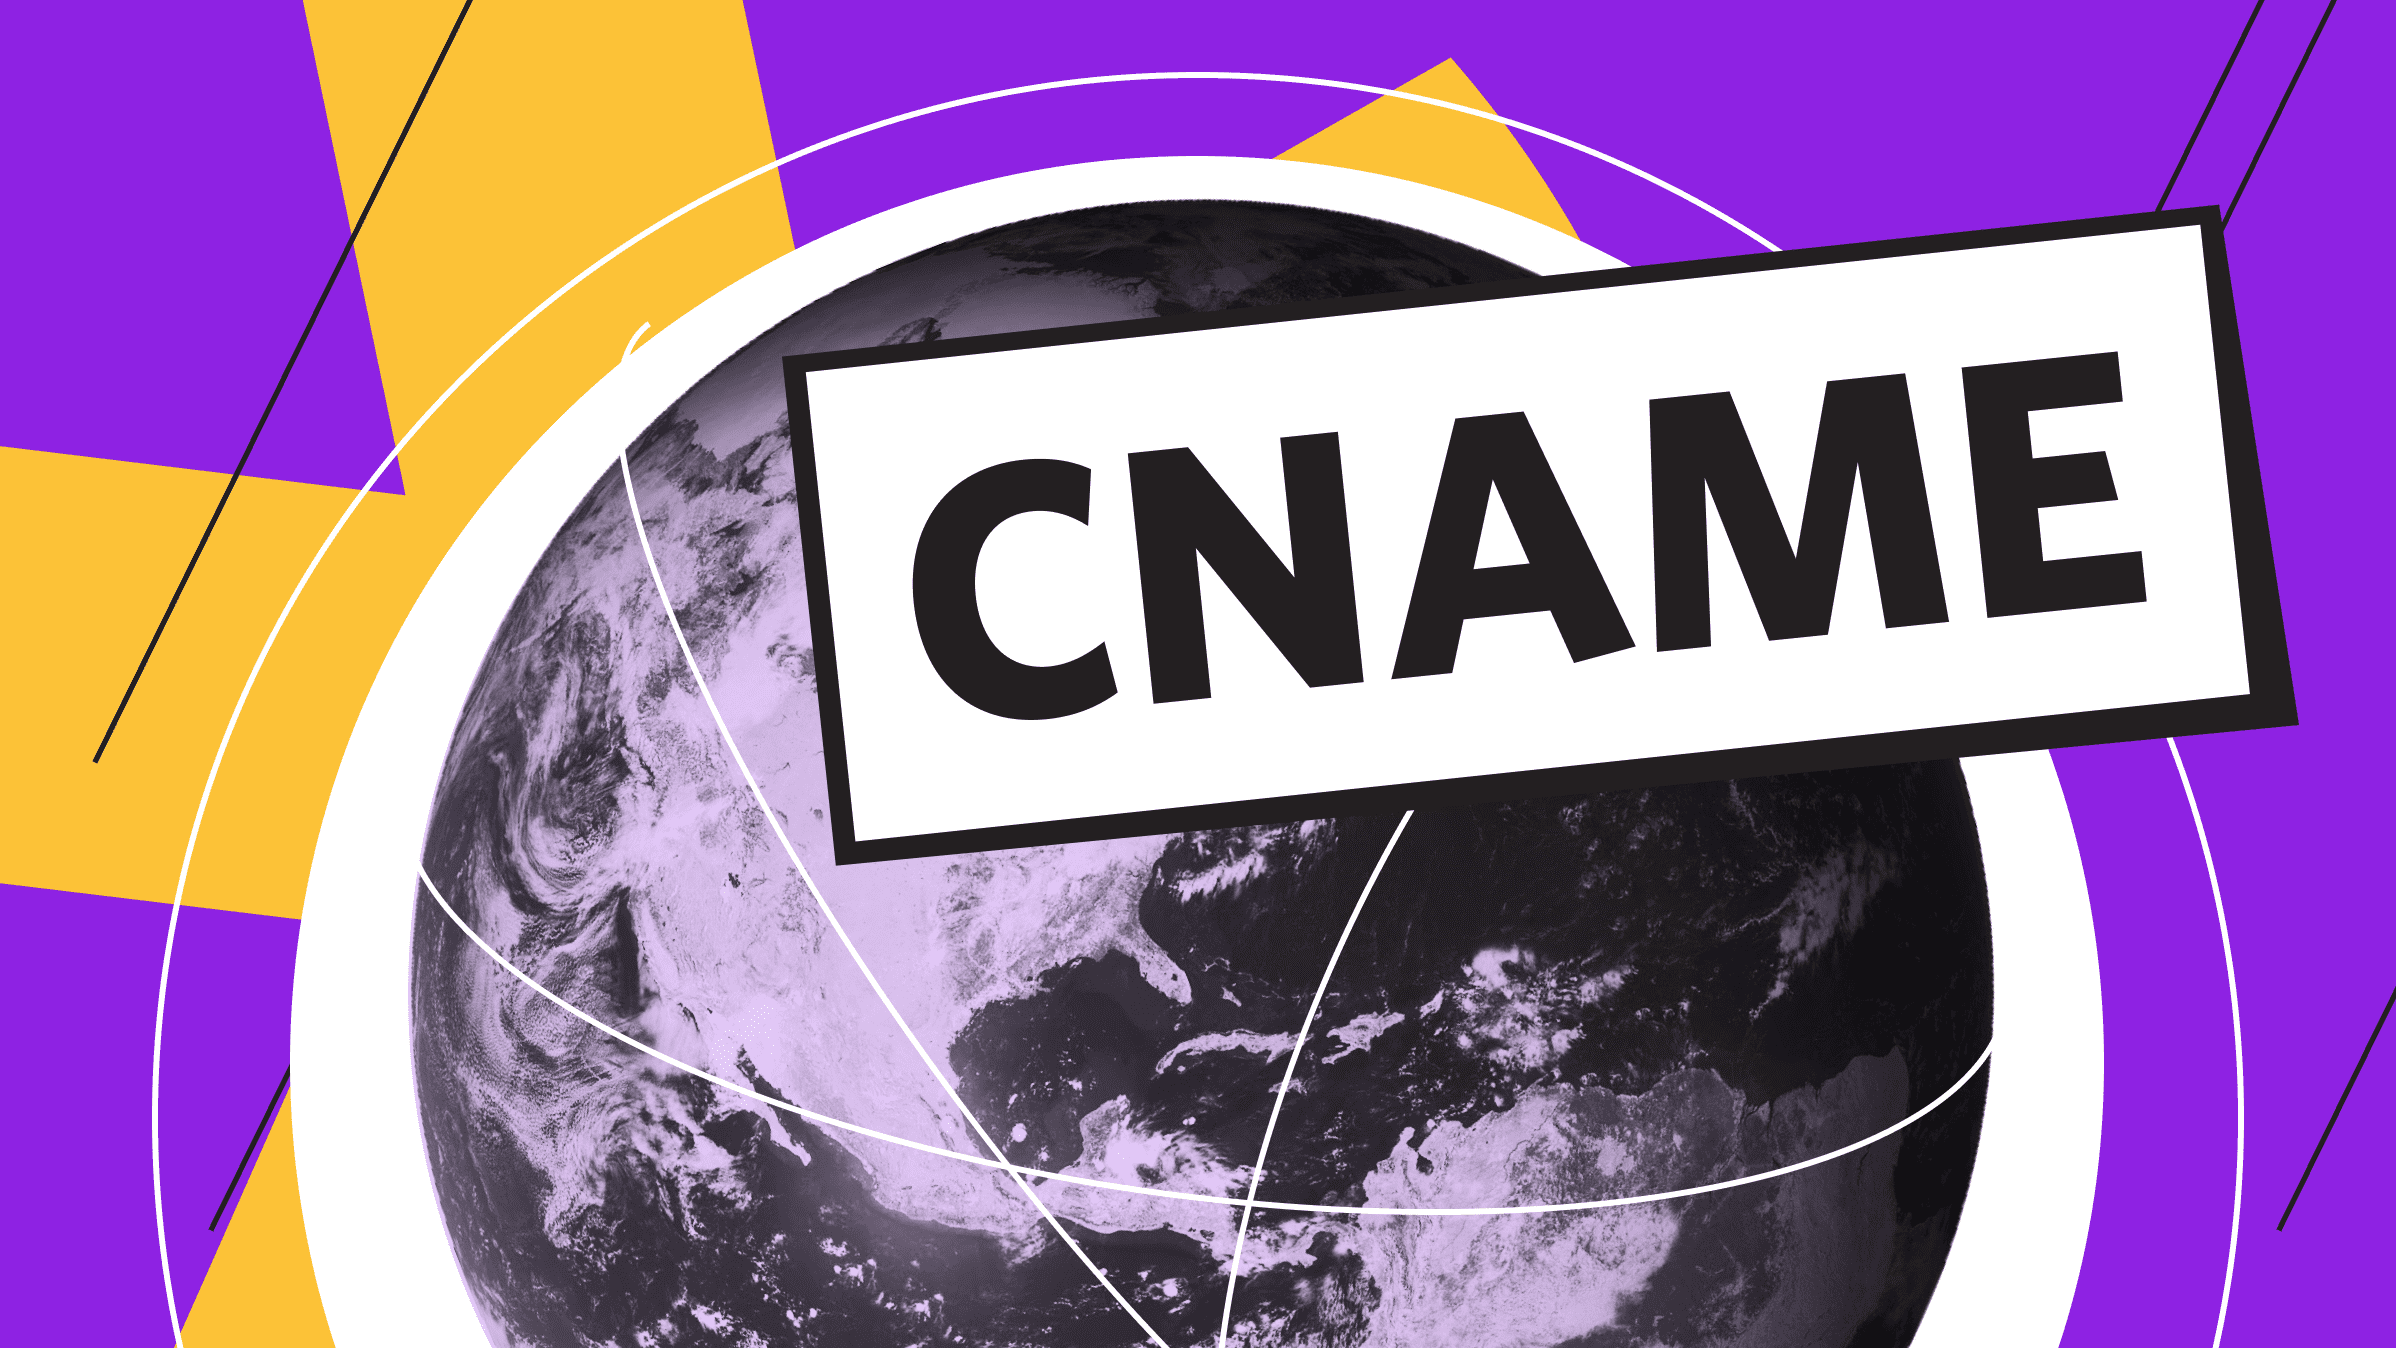 Каноническое имя, или CNAME запись: для чего используется и как создать